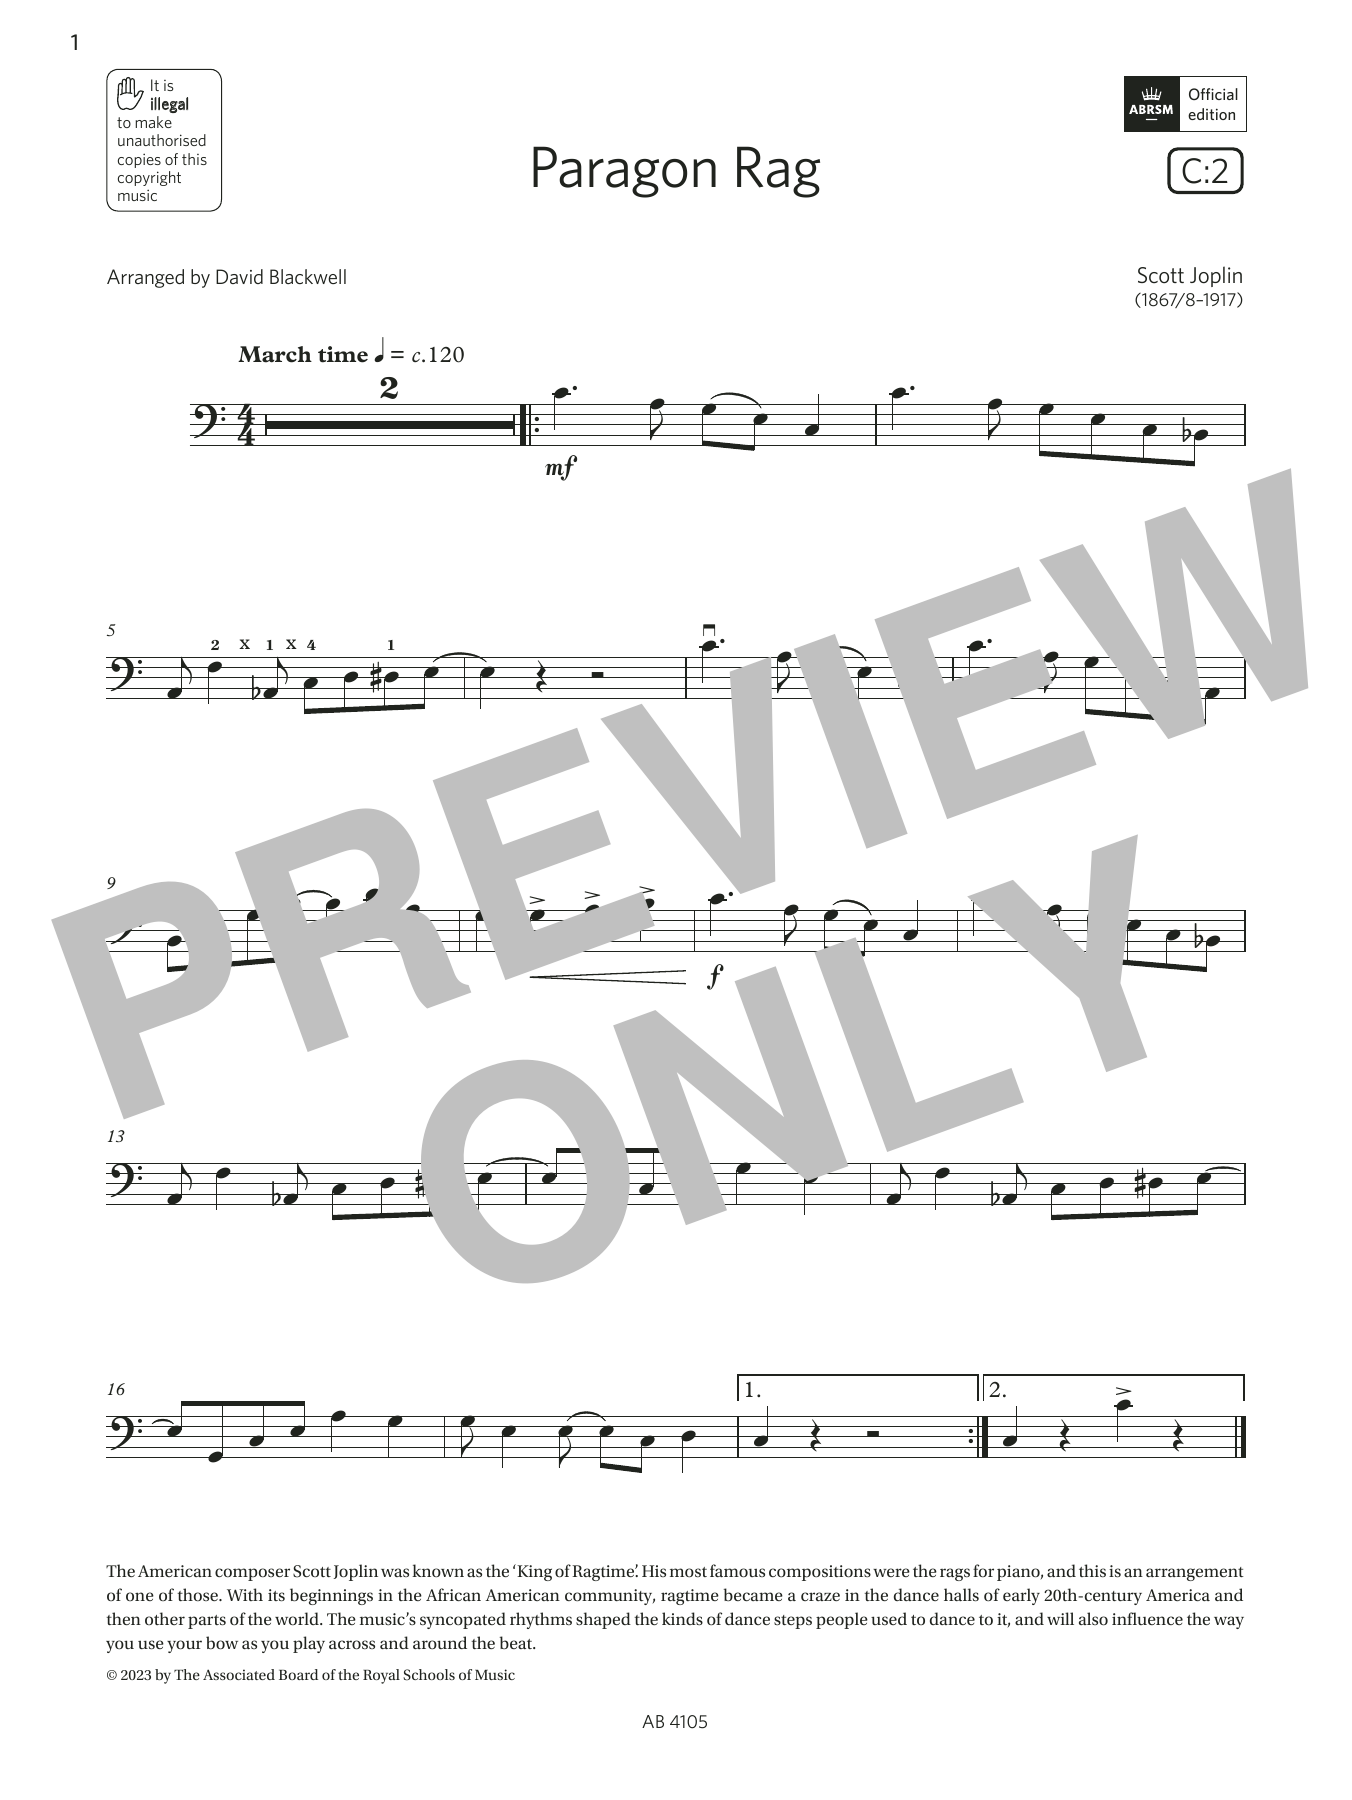 Download Scott Joplin Paragon Rag (Grade 2, C2, from the ABRS Sheet Music